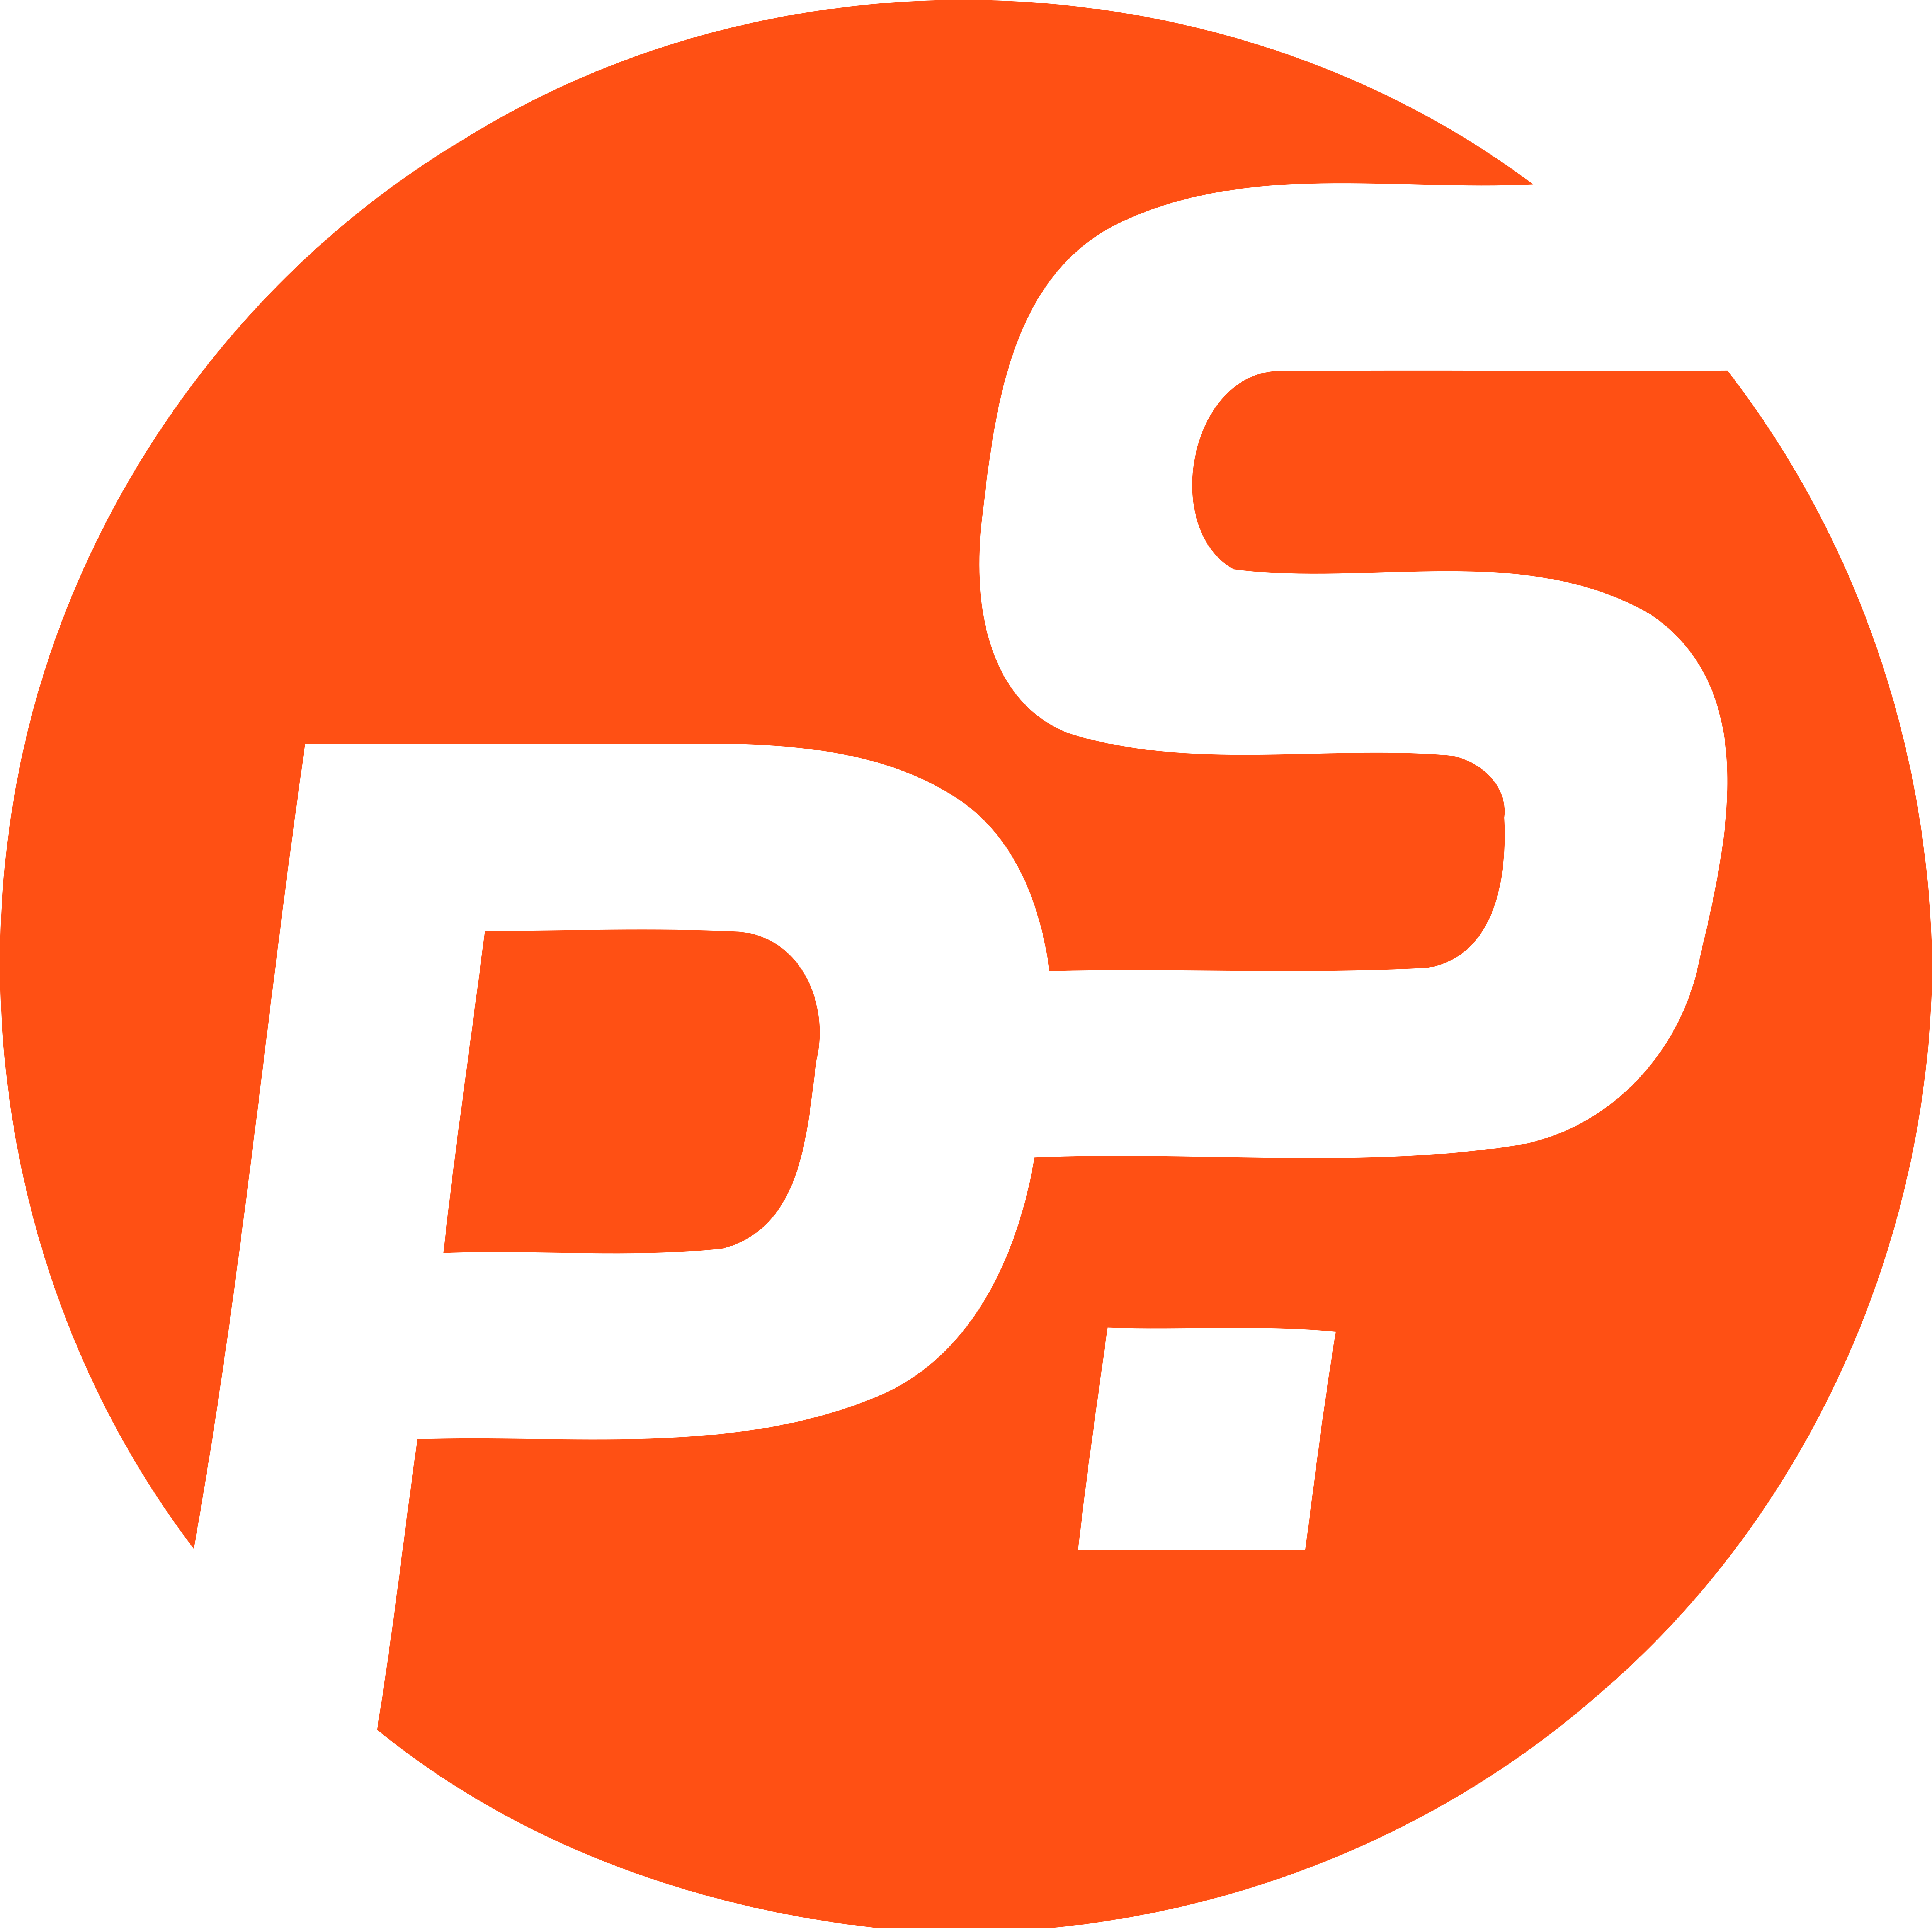 Логотип пс. Эмблема ПС. S&P логотип. Плейстейшен лого. PS лого вектор.